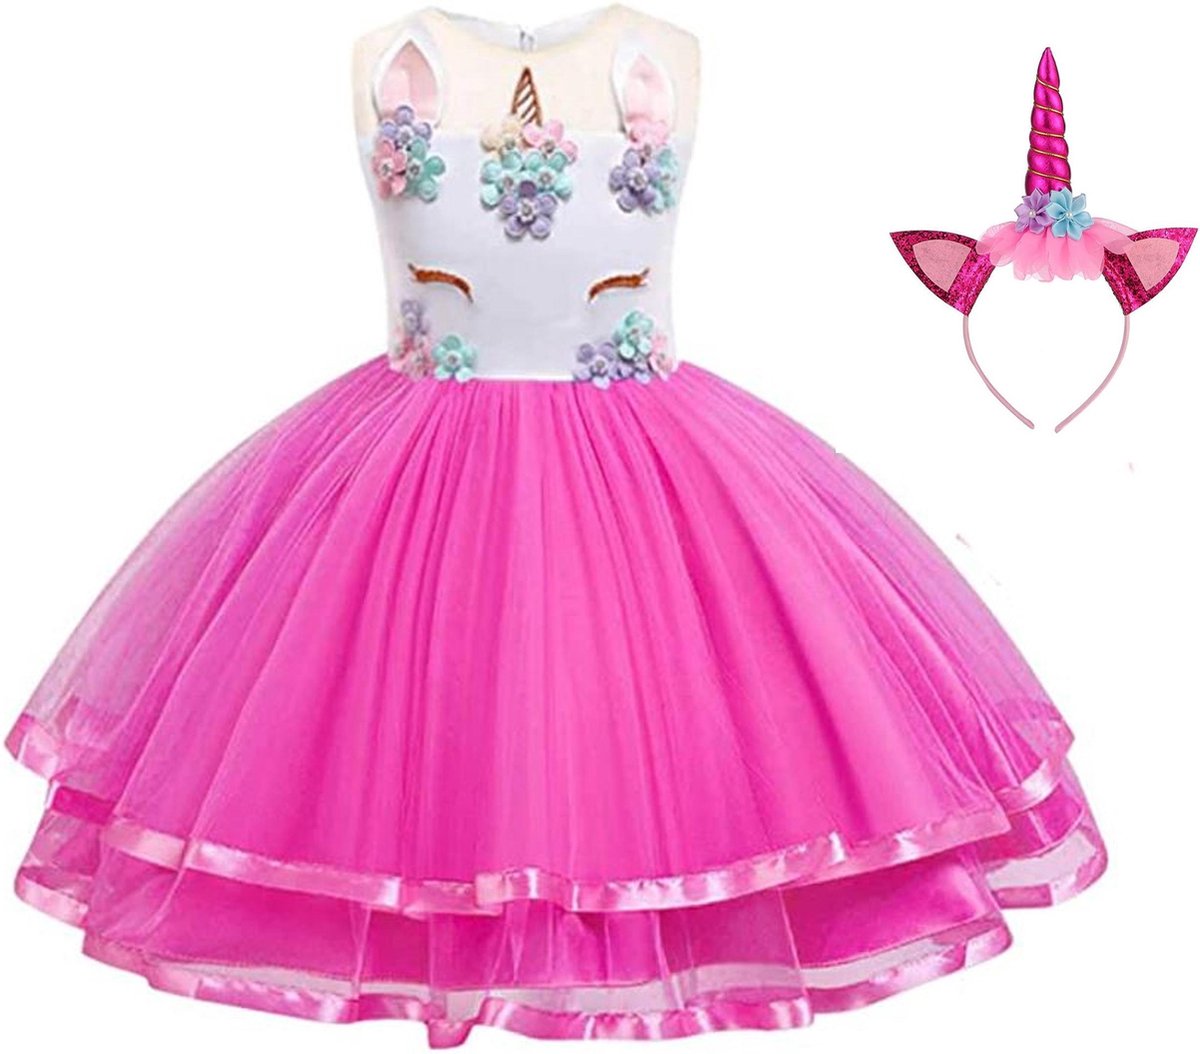 Eenhoorn jurk unicorn jurk eenhoorn kostuum - fel roze 134-140 (150) prinsessen jurk verkleedjurk + haarband